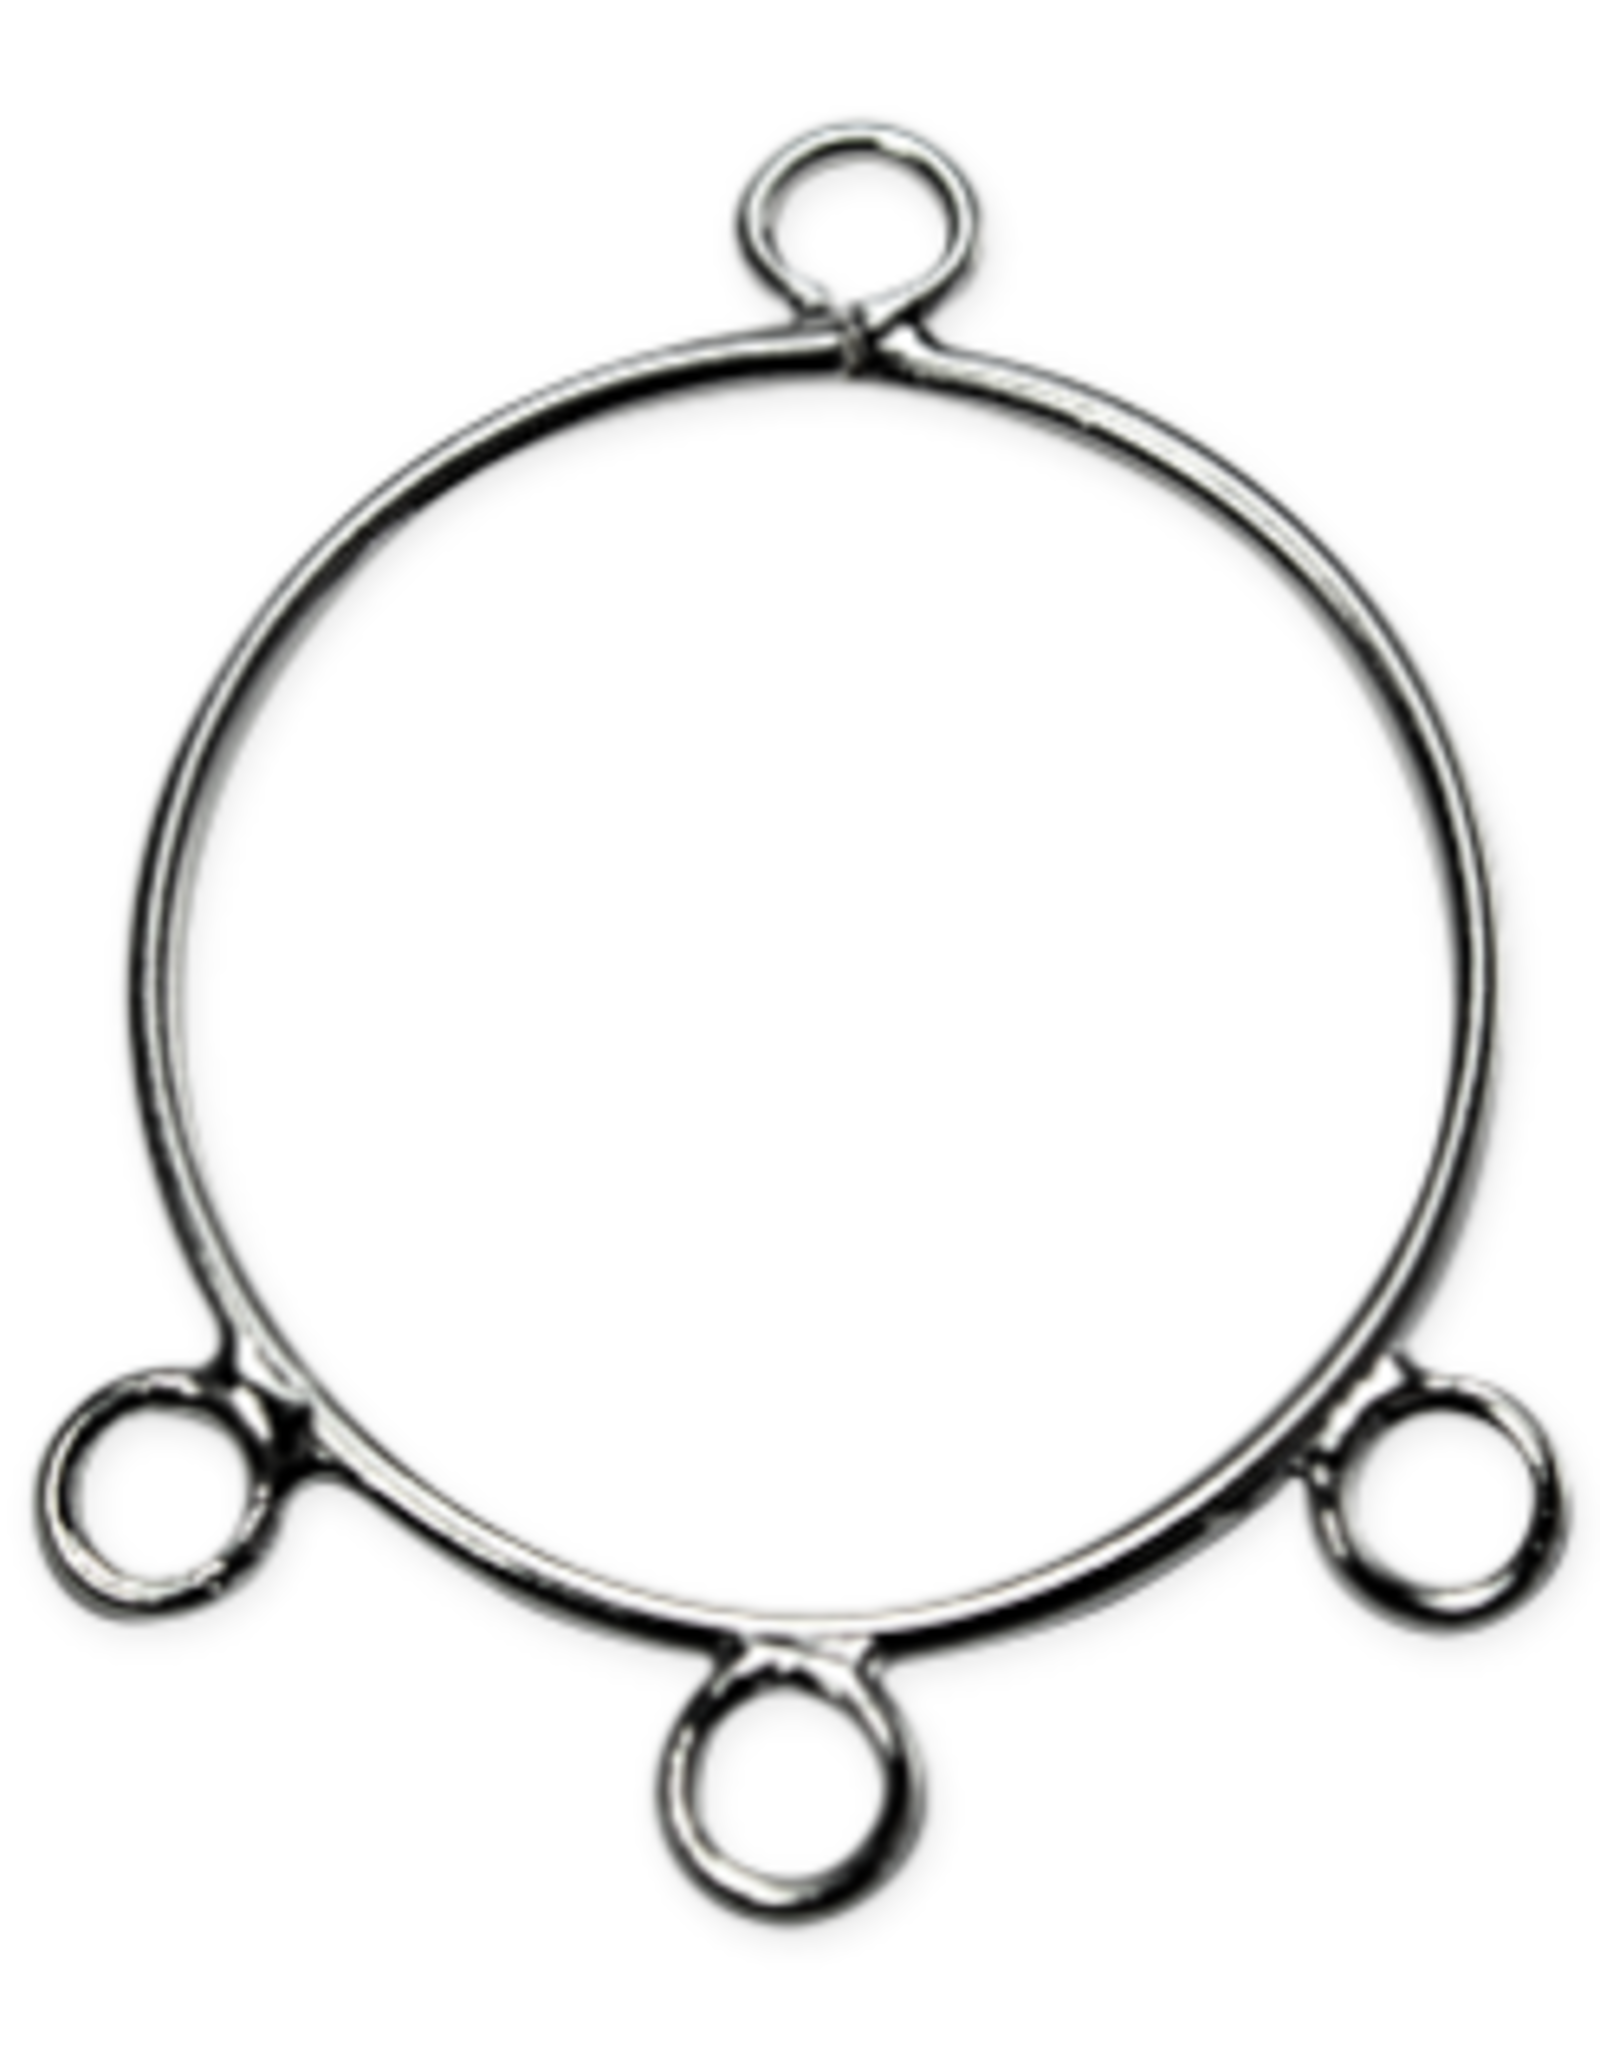 Earring Hoop Link 1 to 3  24mm Silver